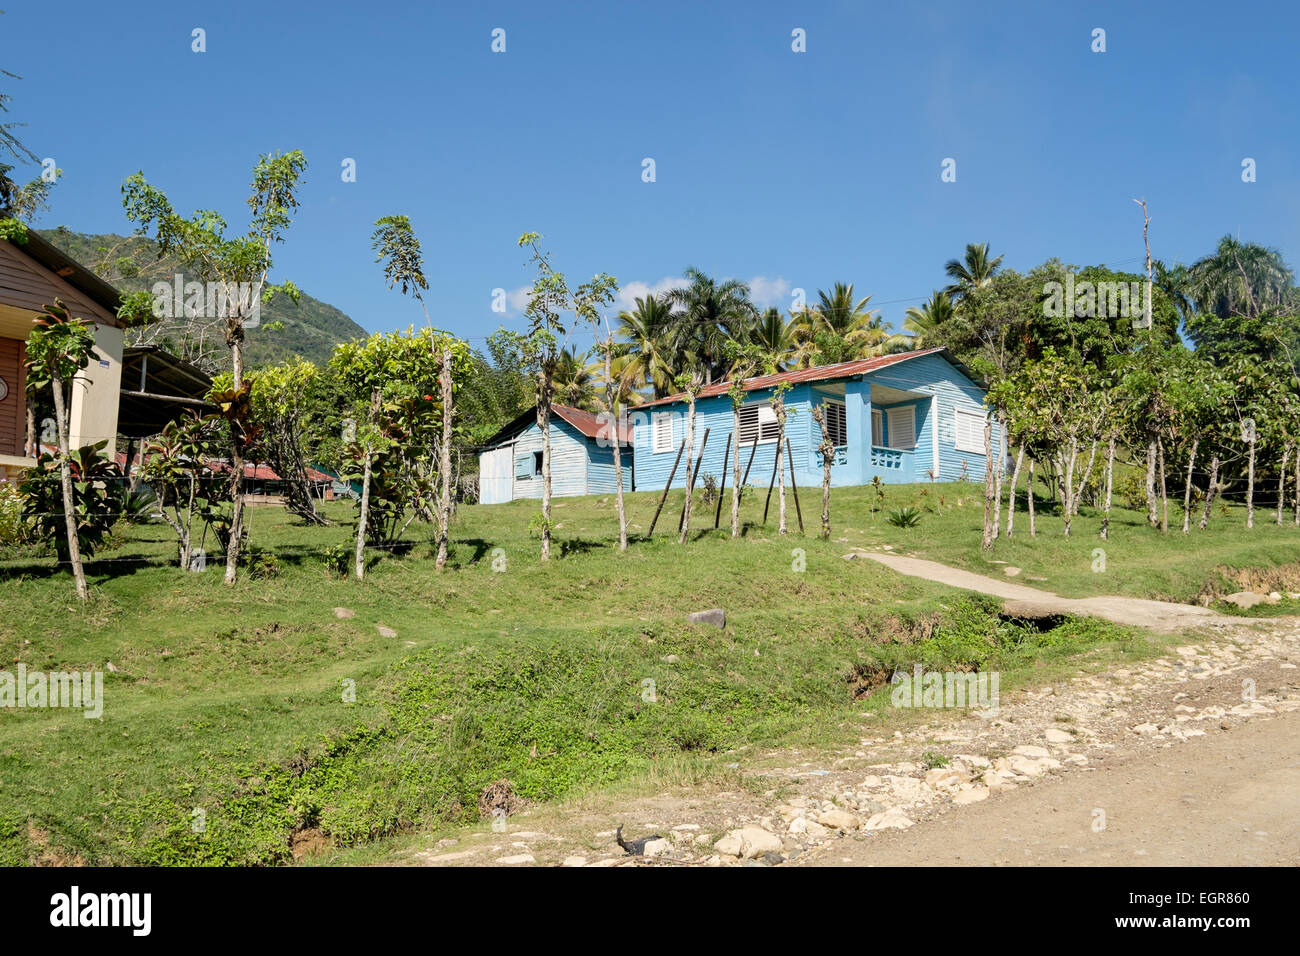 Ein typisches Holzhaus mit Wellpappe Blechdach und Nebengebäude zum Kochen in einem ländlichen Dorf. Dominikanische Republik, Caribbean Stockfoto